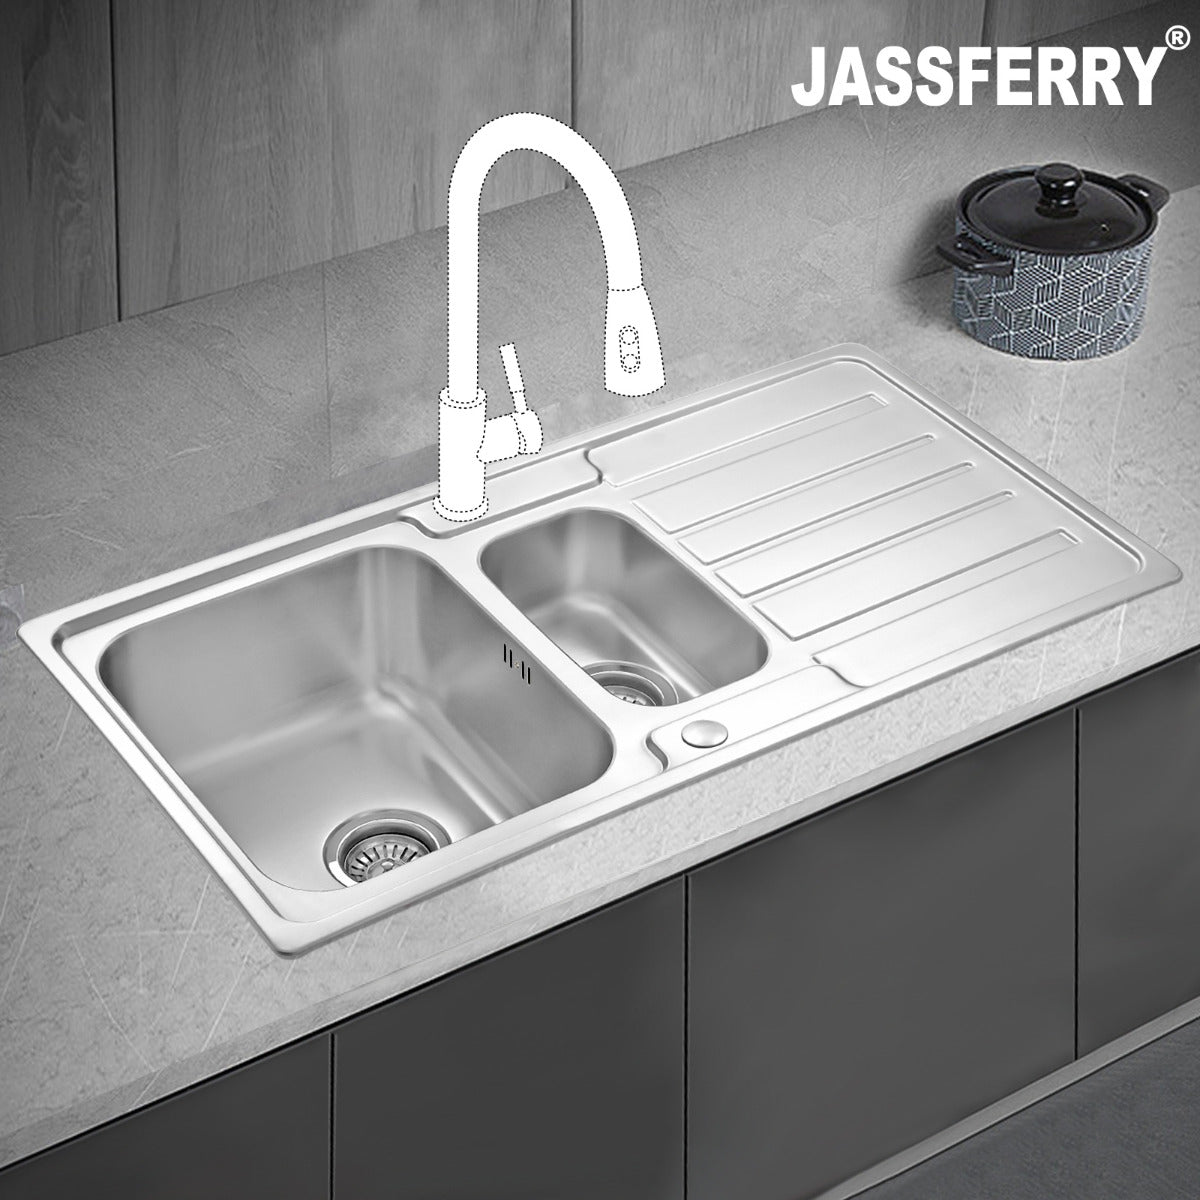 JassferryJASSFERRY Stainless Steel Kitchen Sink Inset One Half Bowl Reversible DrainerKitchen Sinks